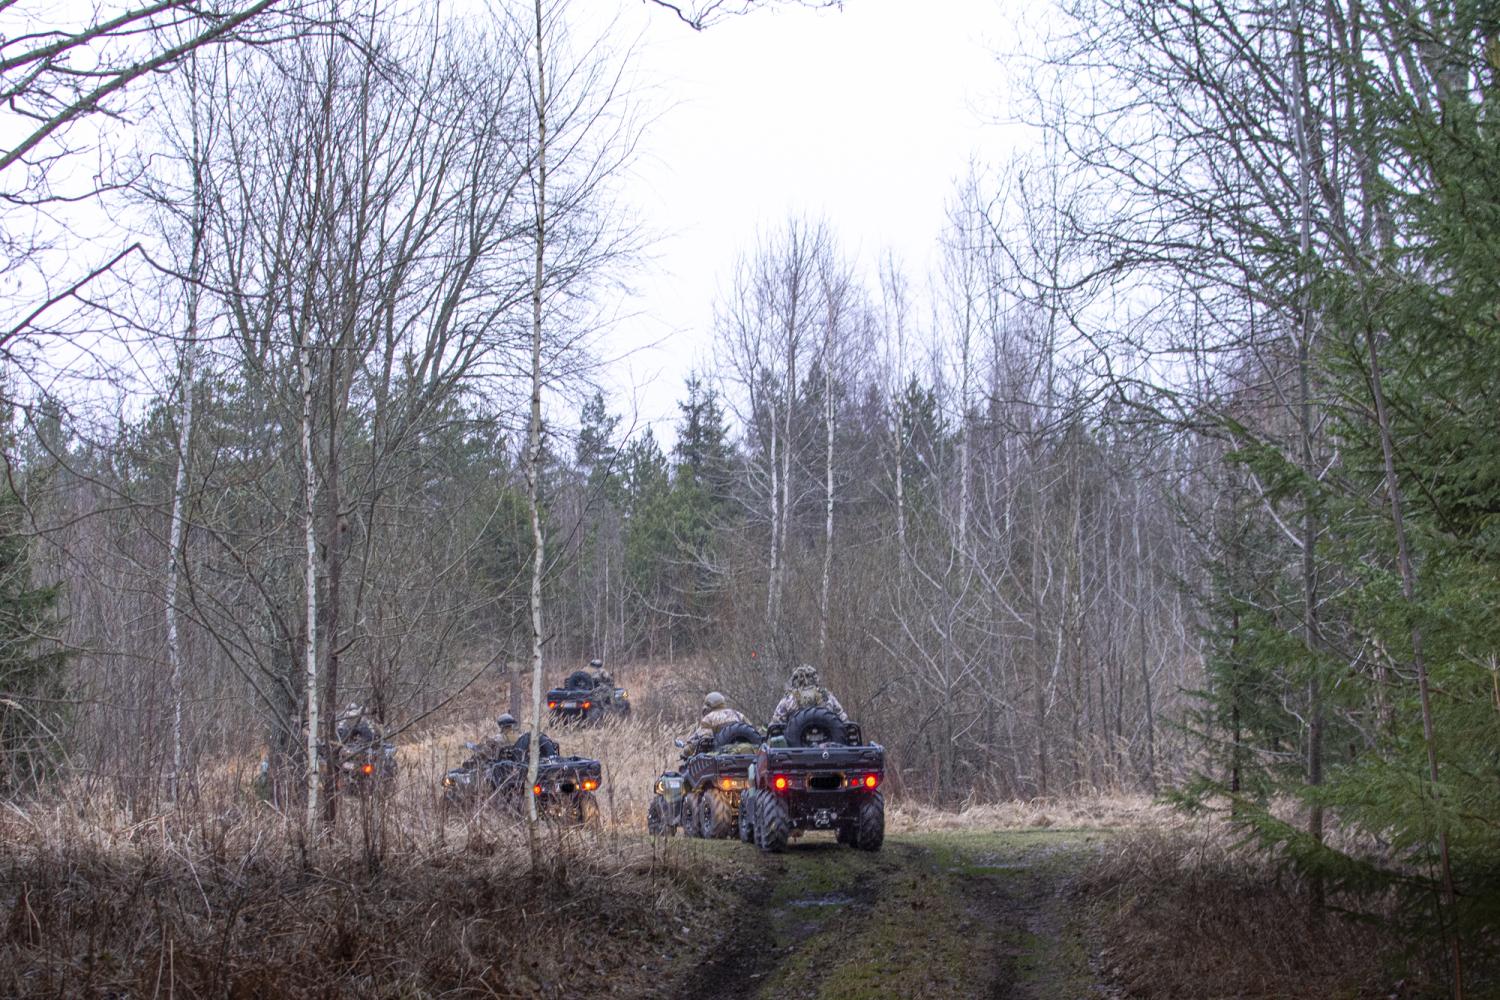 Pieci sešriteņu kvadricikli, uz kuriem sēž zemessargi pilnā kaujas ekipējumā, brauc mežainā apvidū